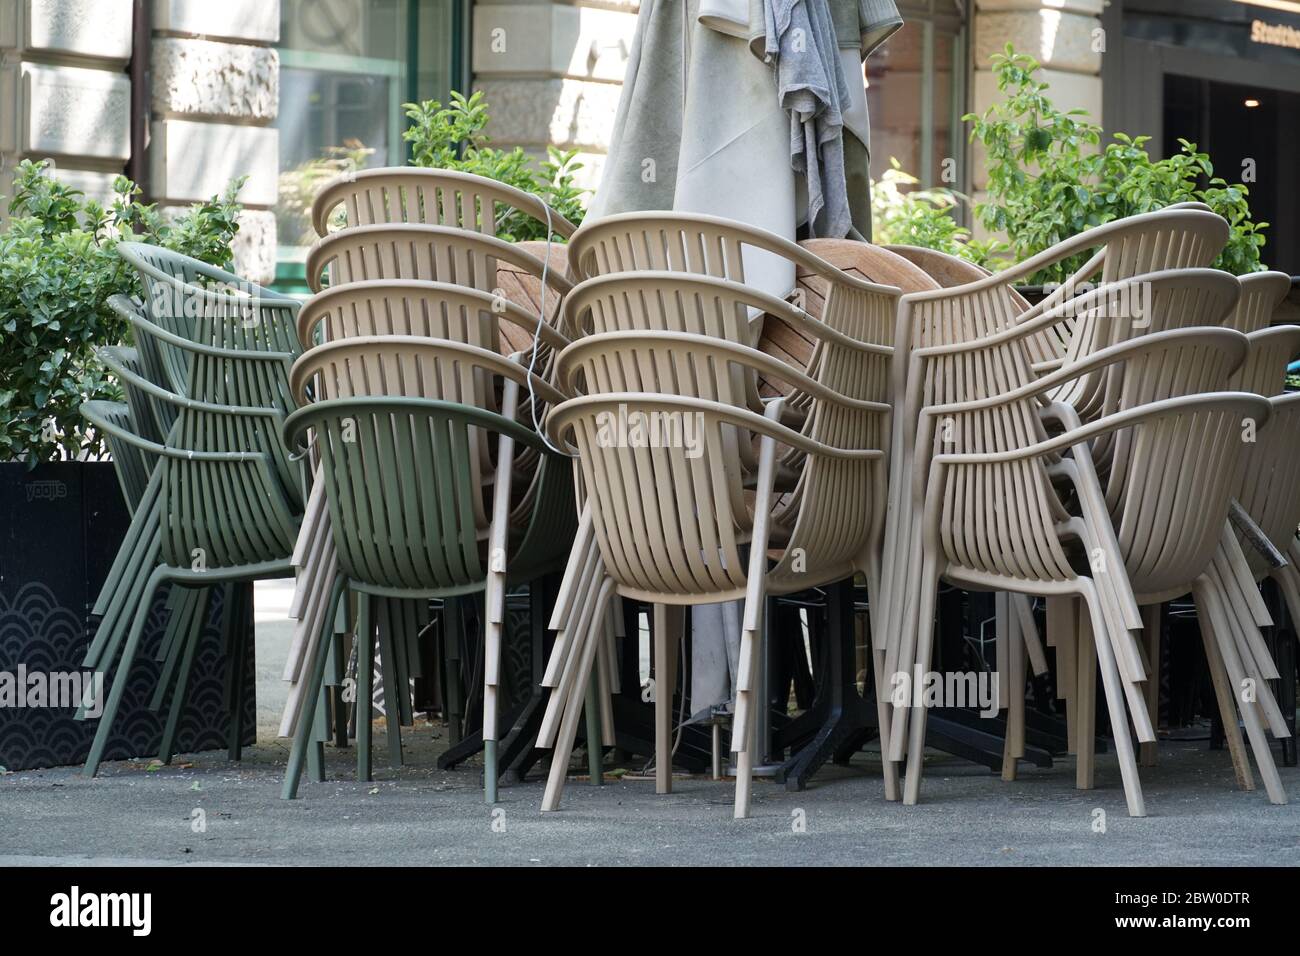 Stapelweise Stühle eines Straßencafés, Terrassencafés, vor einem Restaurant. Er ist wegen Coronavirus, COVID-19-Sperrung geschlossen. Die Bevölkerung ist Heimat. Stockfoto